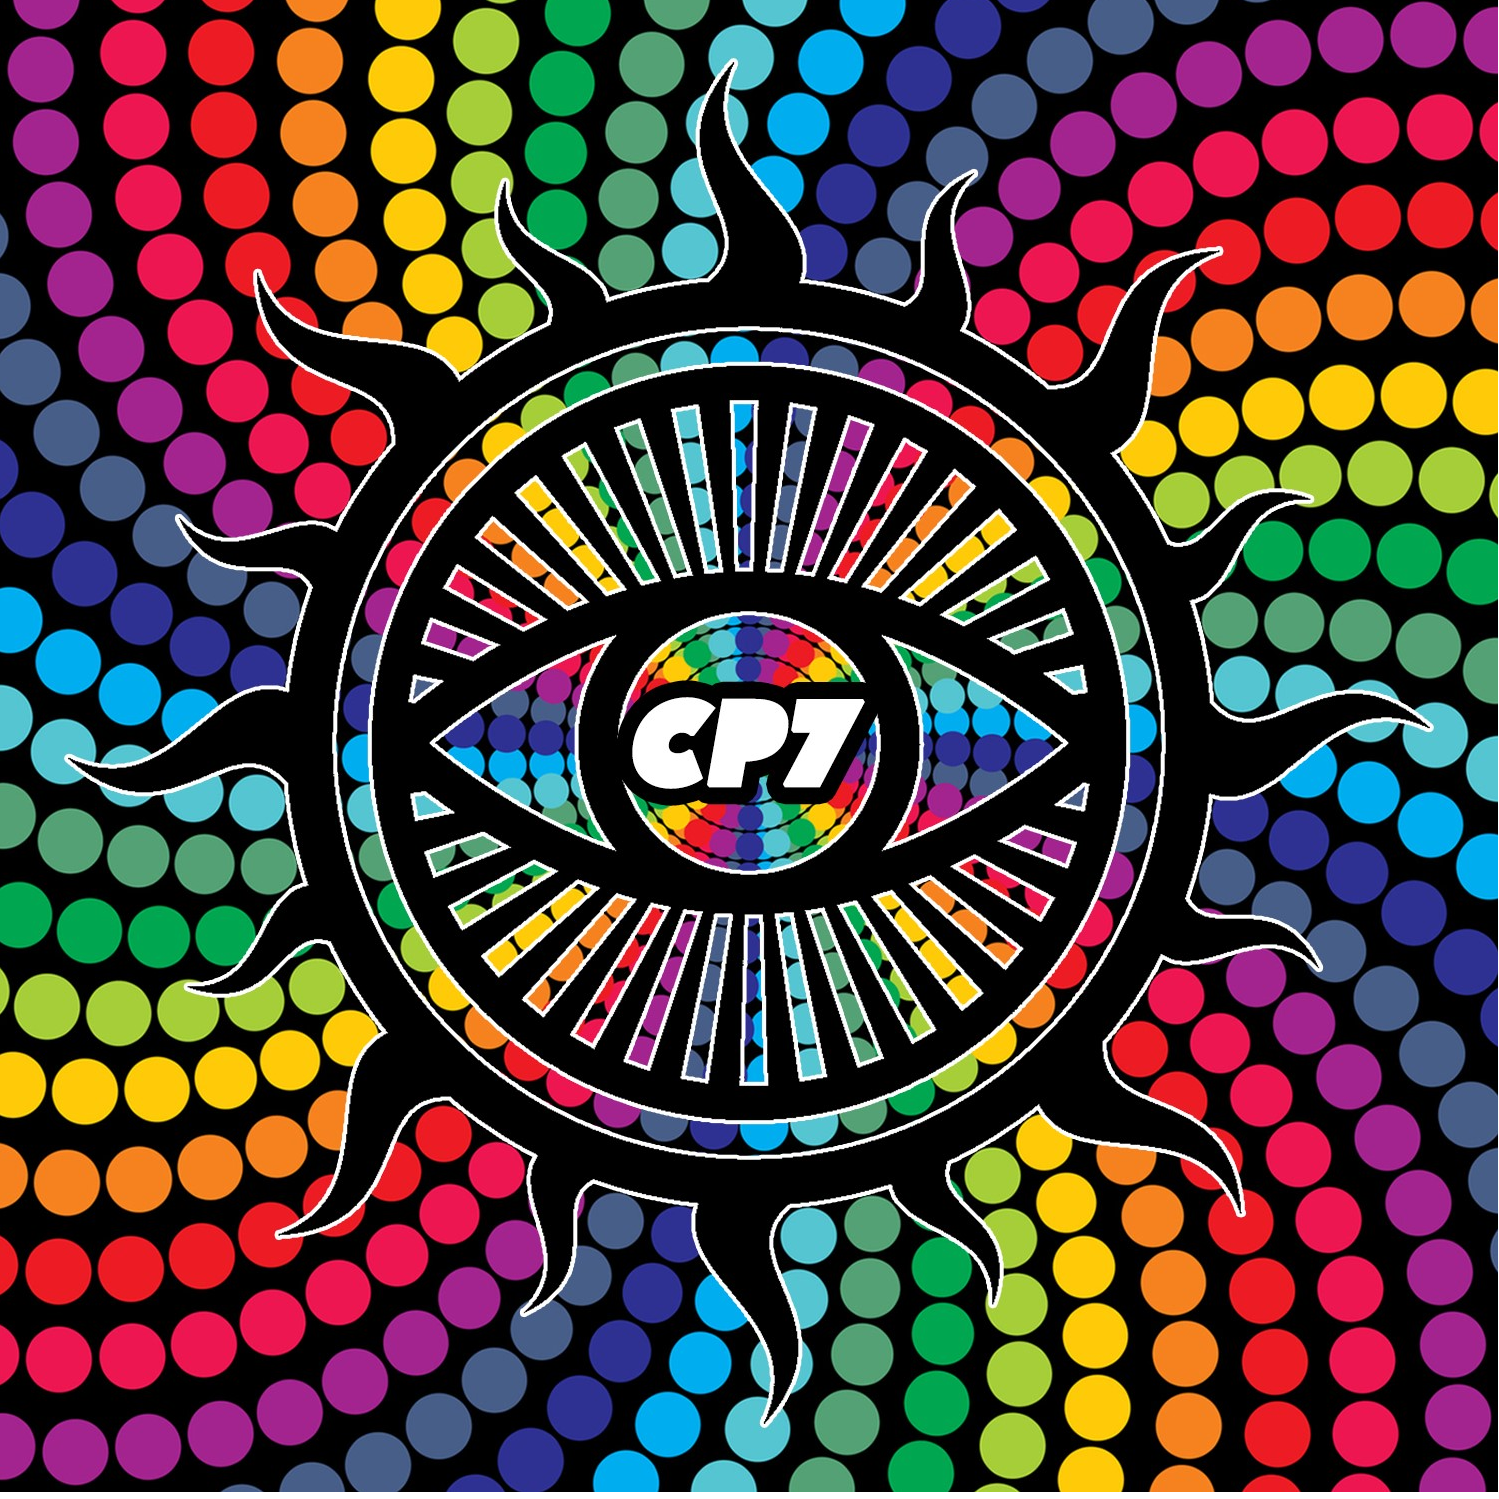 CP7 Records Radio